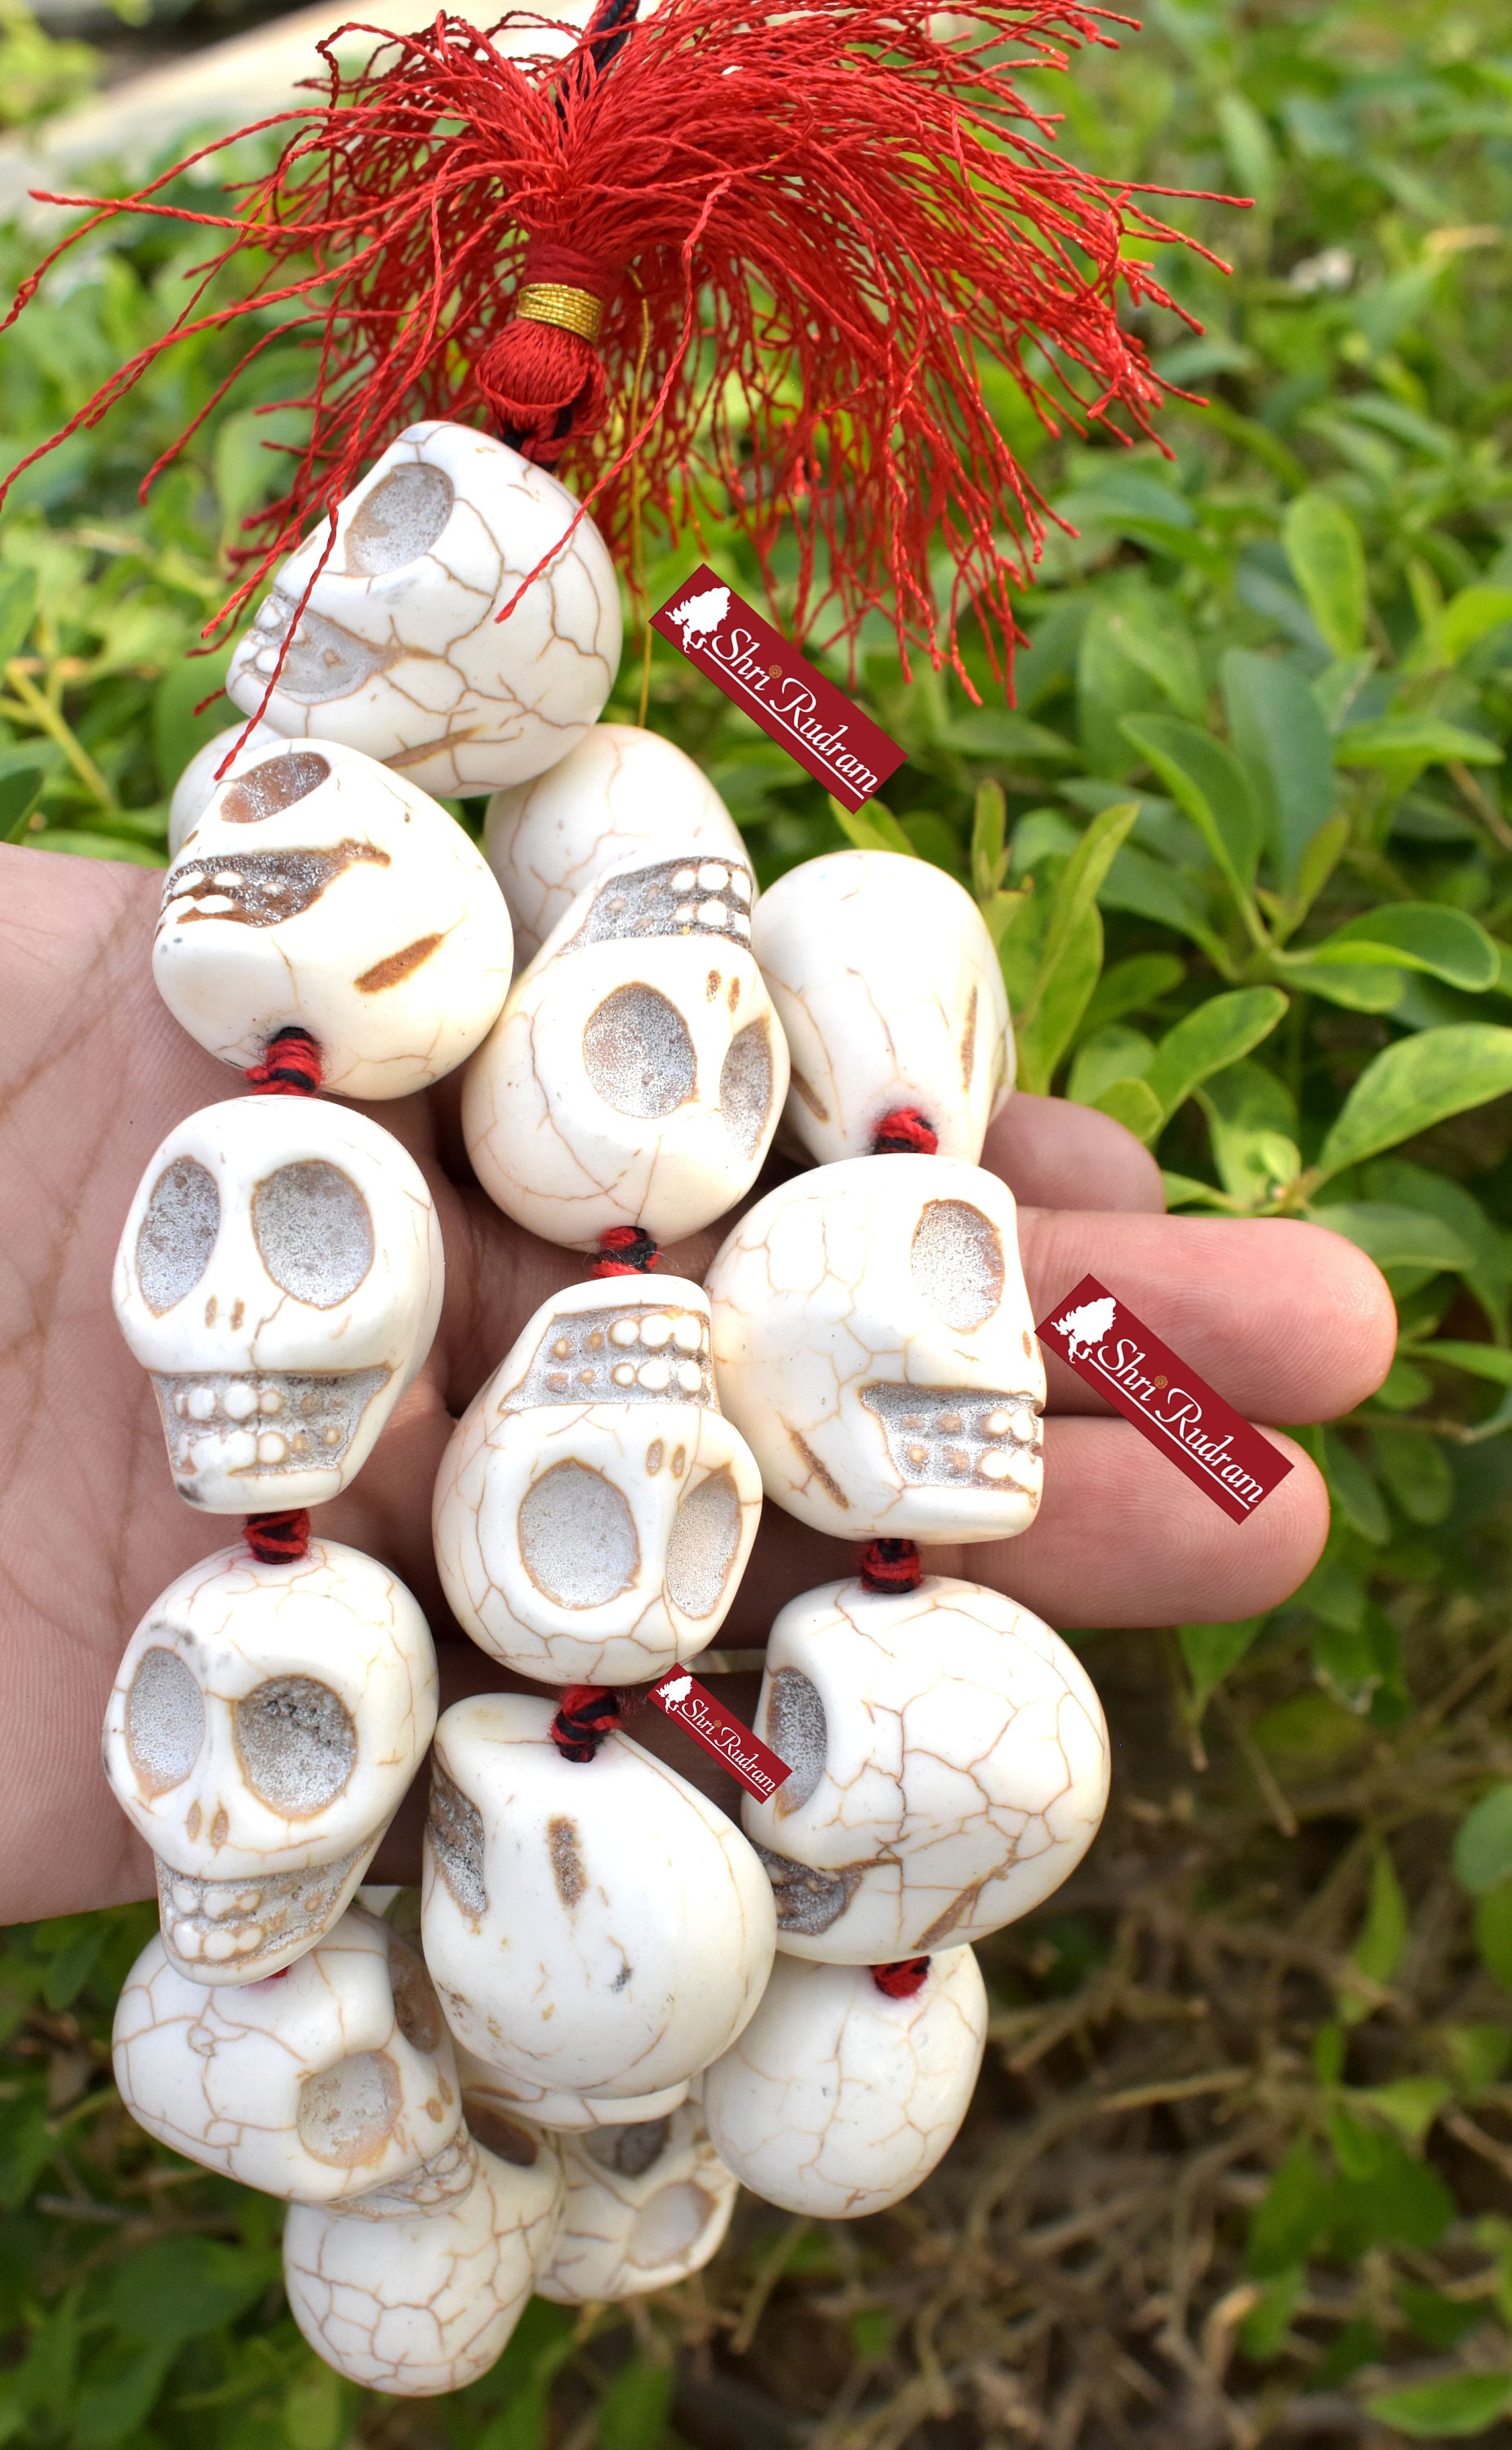 Bone Skull Beads, India